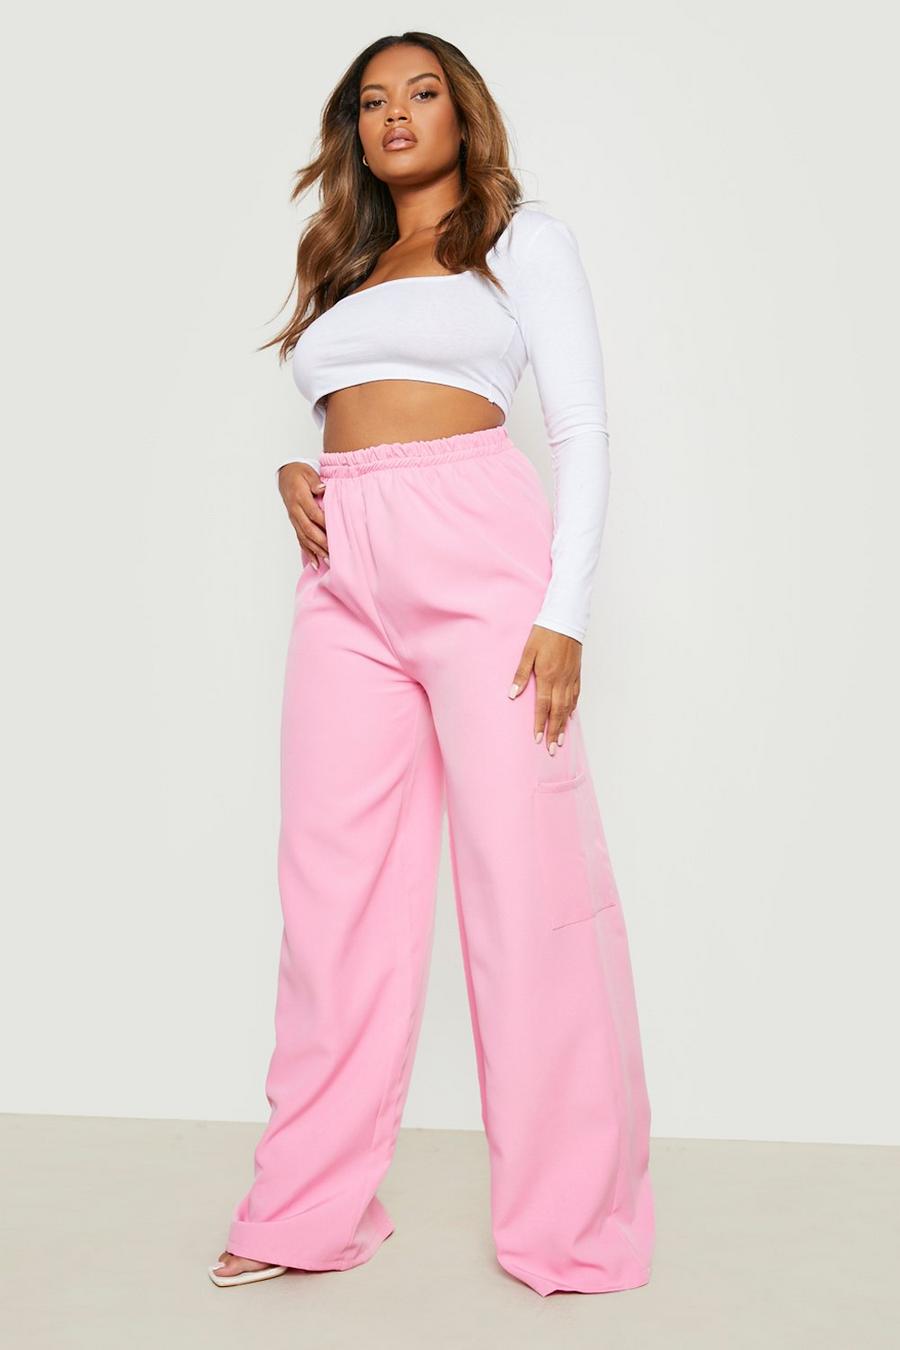 Pantalón Plus con cintura elástica y bolsillos cargo, Baby pink rosa